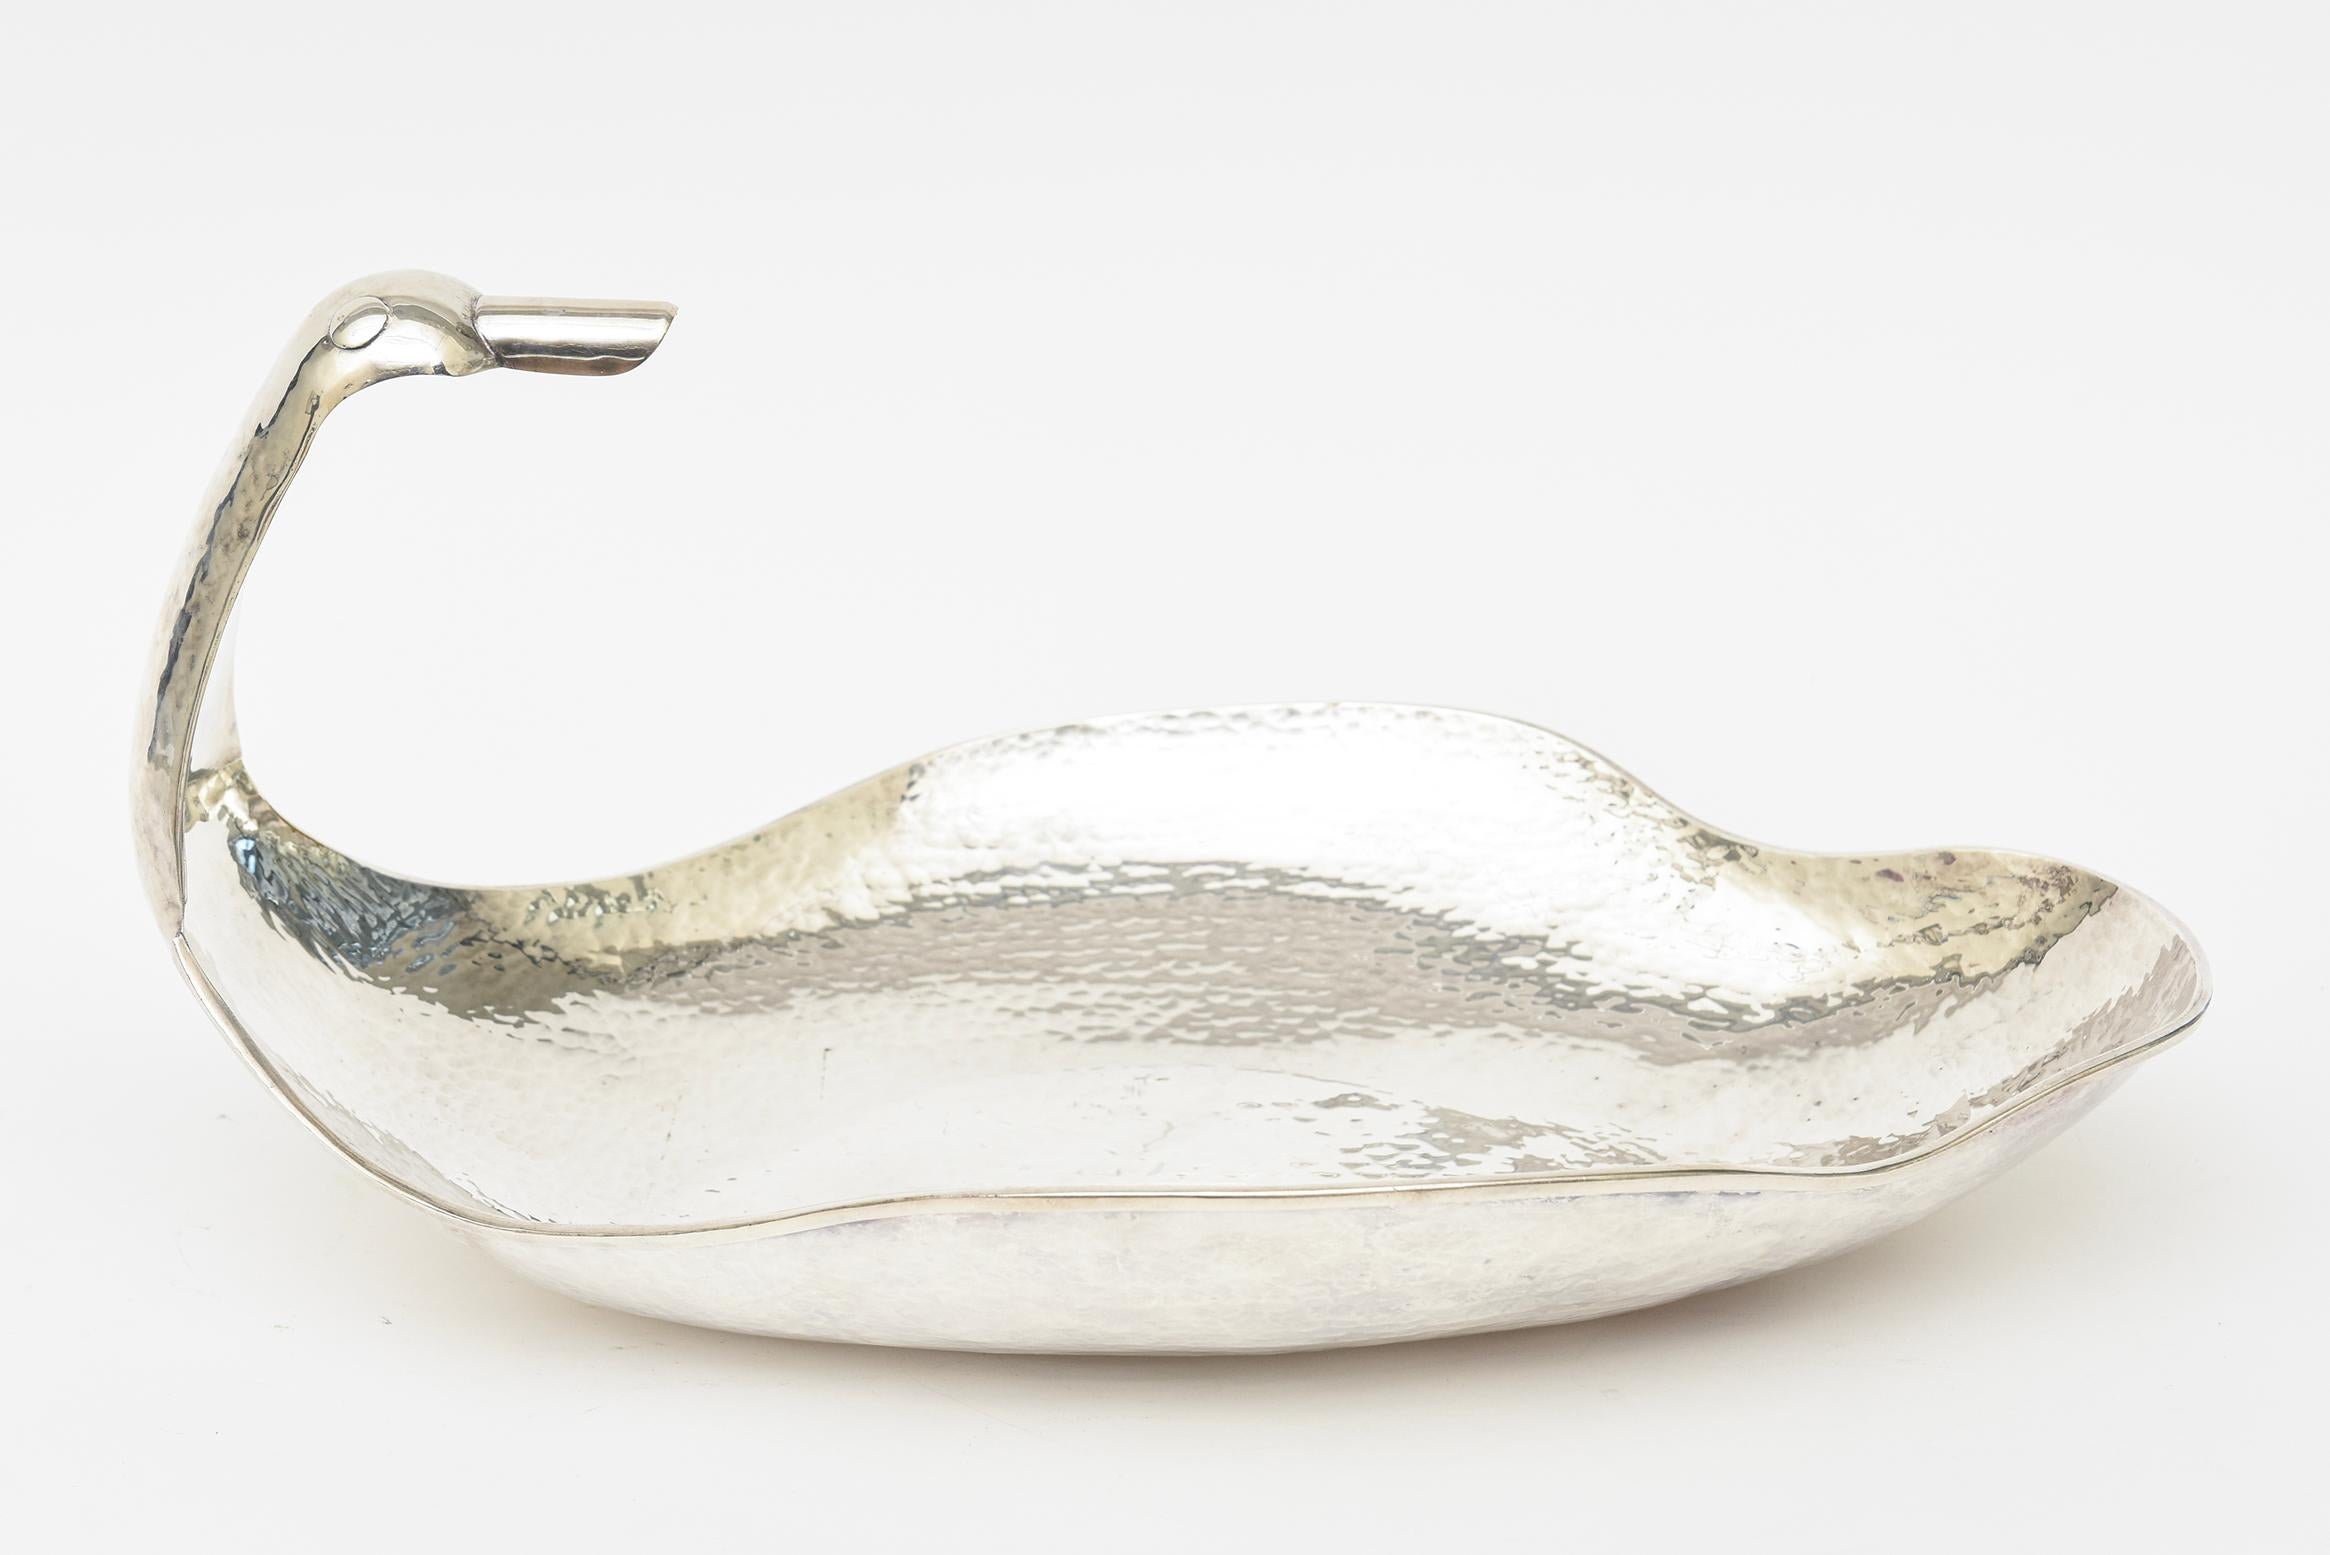 Diese monumentale, skurrile Schale aus handgehämmertem Silber hat einen übertriebenen Entenkopf mit großem Schnabel als eine der gebogenen Seiten. Es hat überschnittene Seiten. Es wurde professionell auf Hochglanz poliert, damit es so gut wie